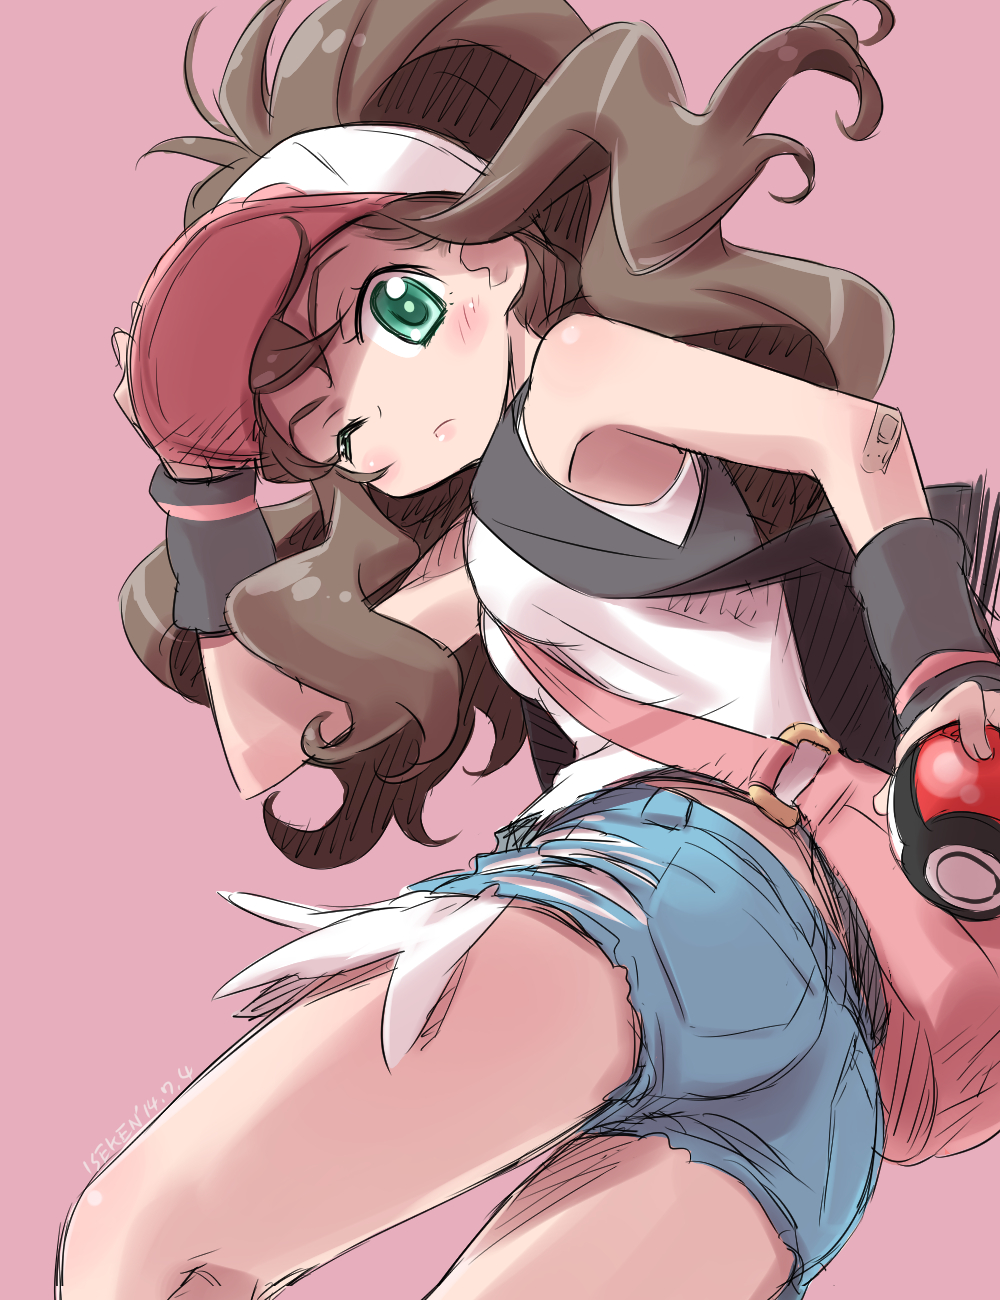 Anime Anime Girls Pokemon Hilda Pokemon Long Hair Ponytail Brunette Solo Artwork Digital Art Fan Art 1000x1300